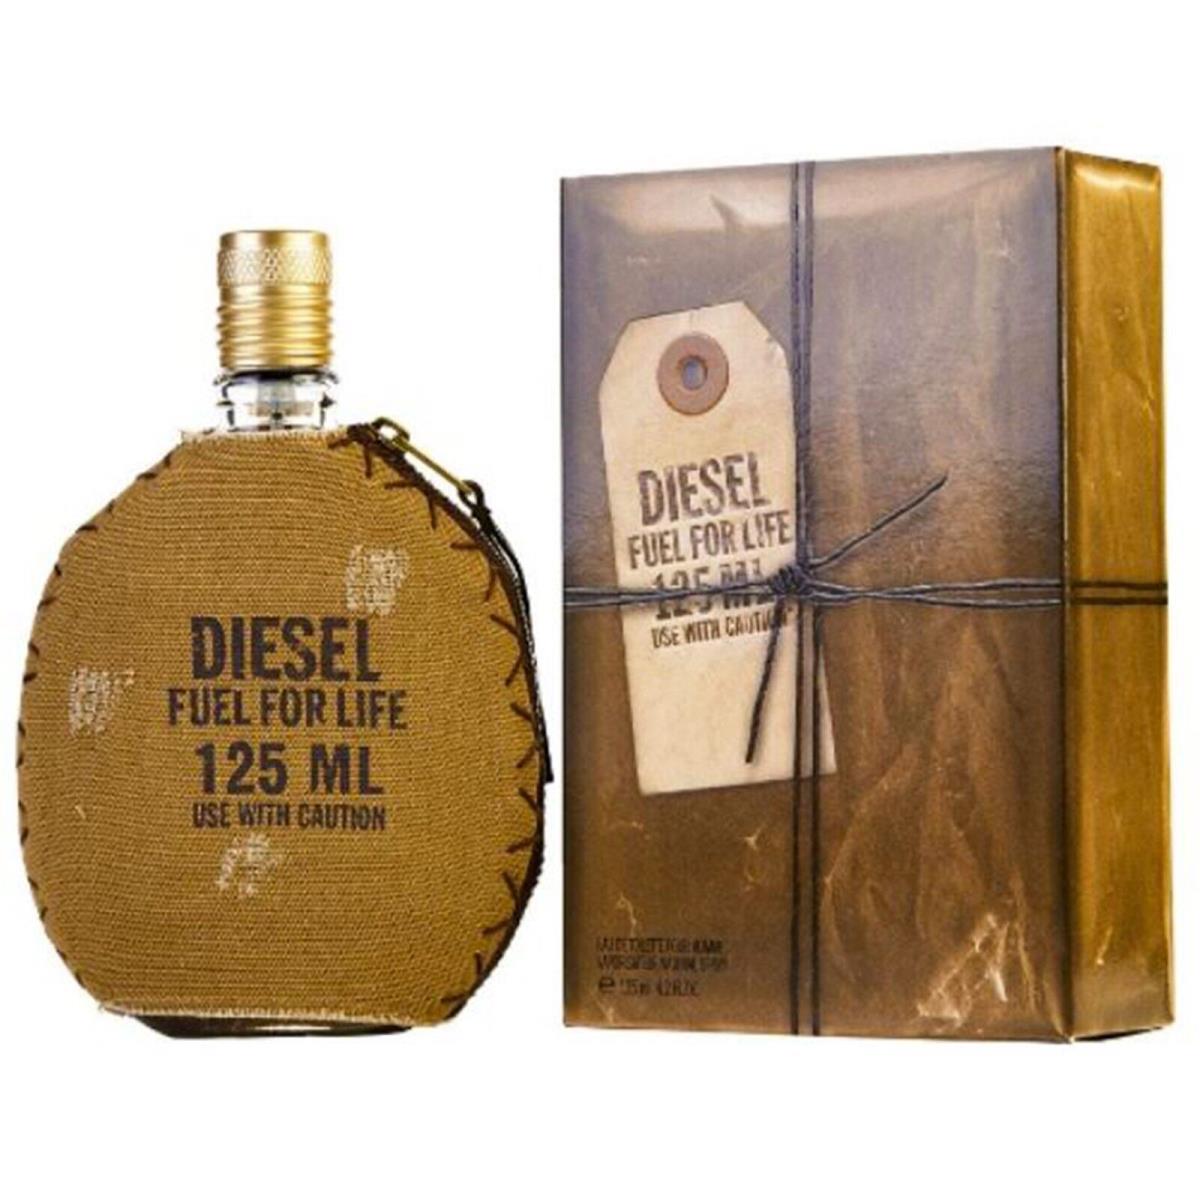 Diesel perfume,cologne,fragrance,parfum 